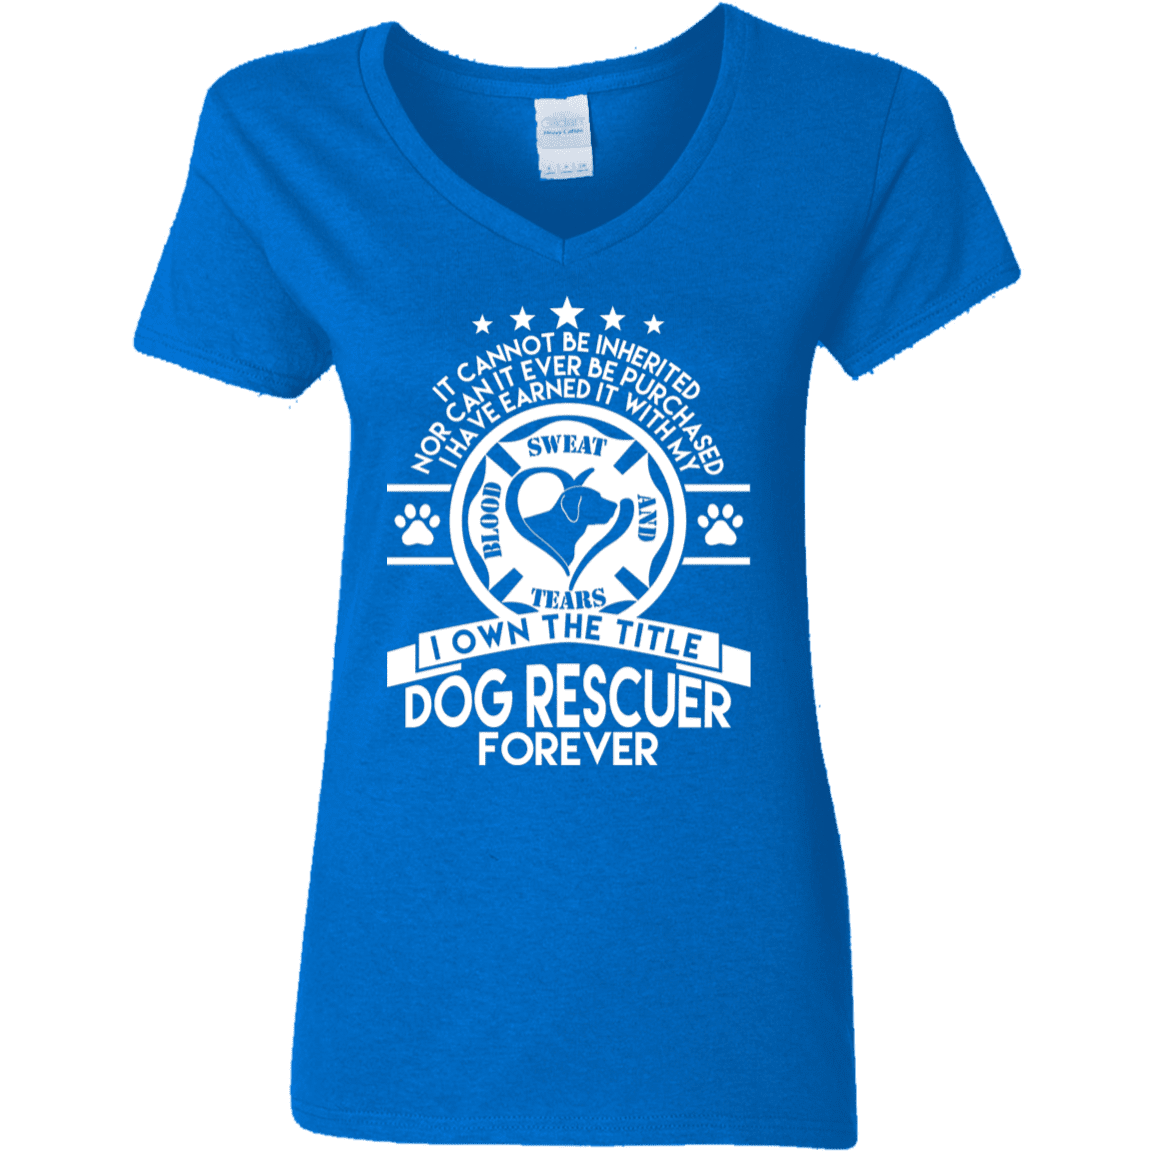 Dog Rescuer Forever - Ladies V Neck.